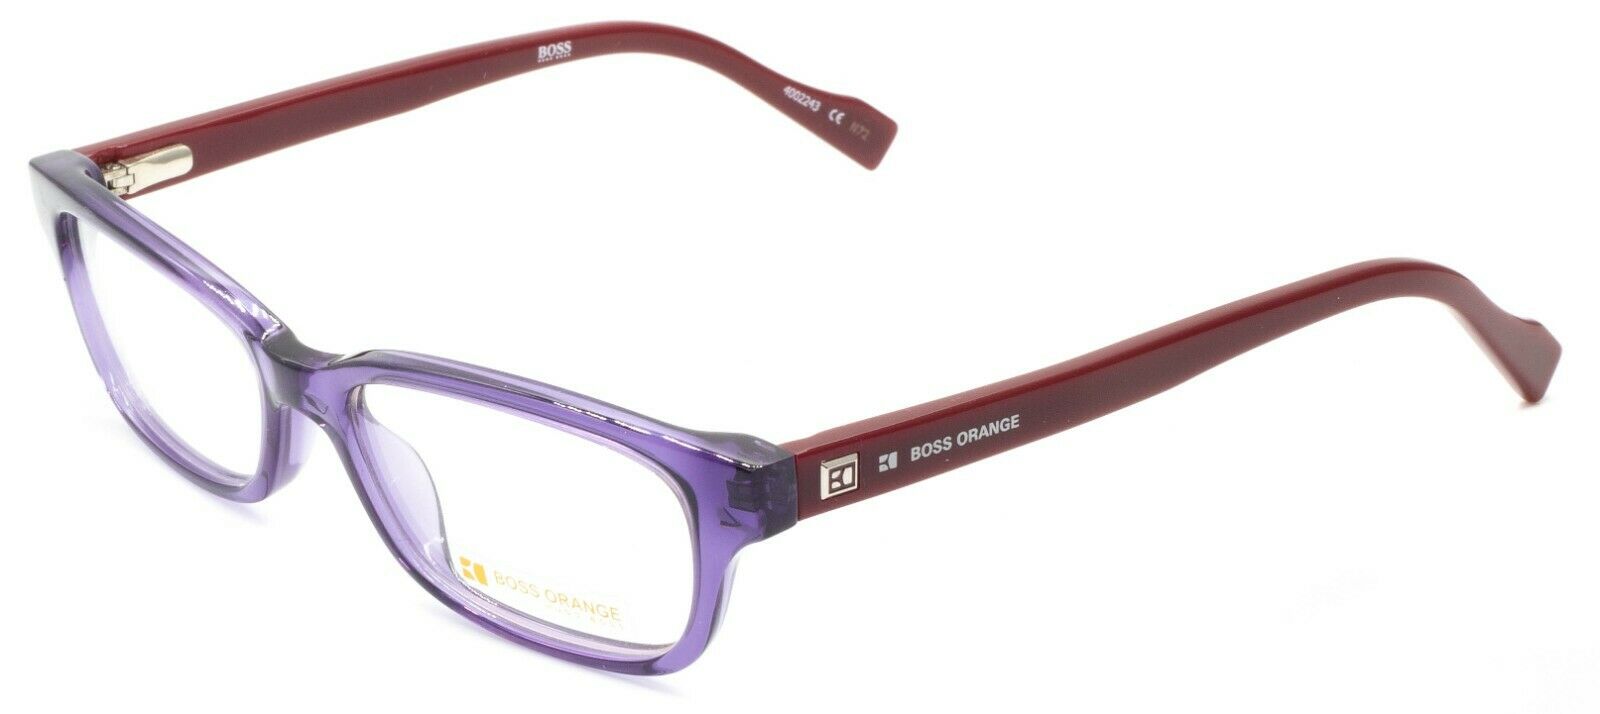 ORANGE BO 49mm Eyewear FRAMES RX Optical Eyeglasses - GGV Eyewear